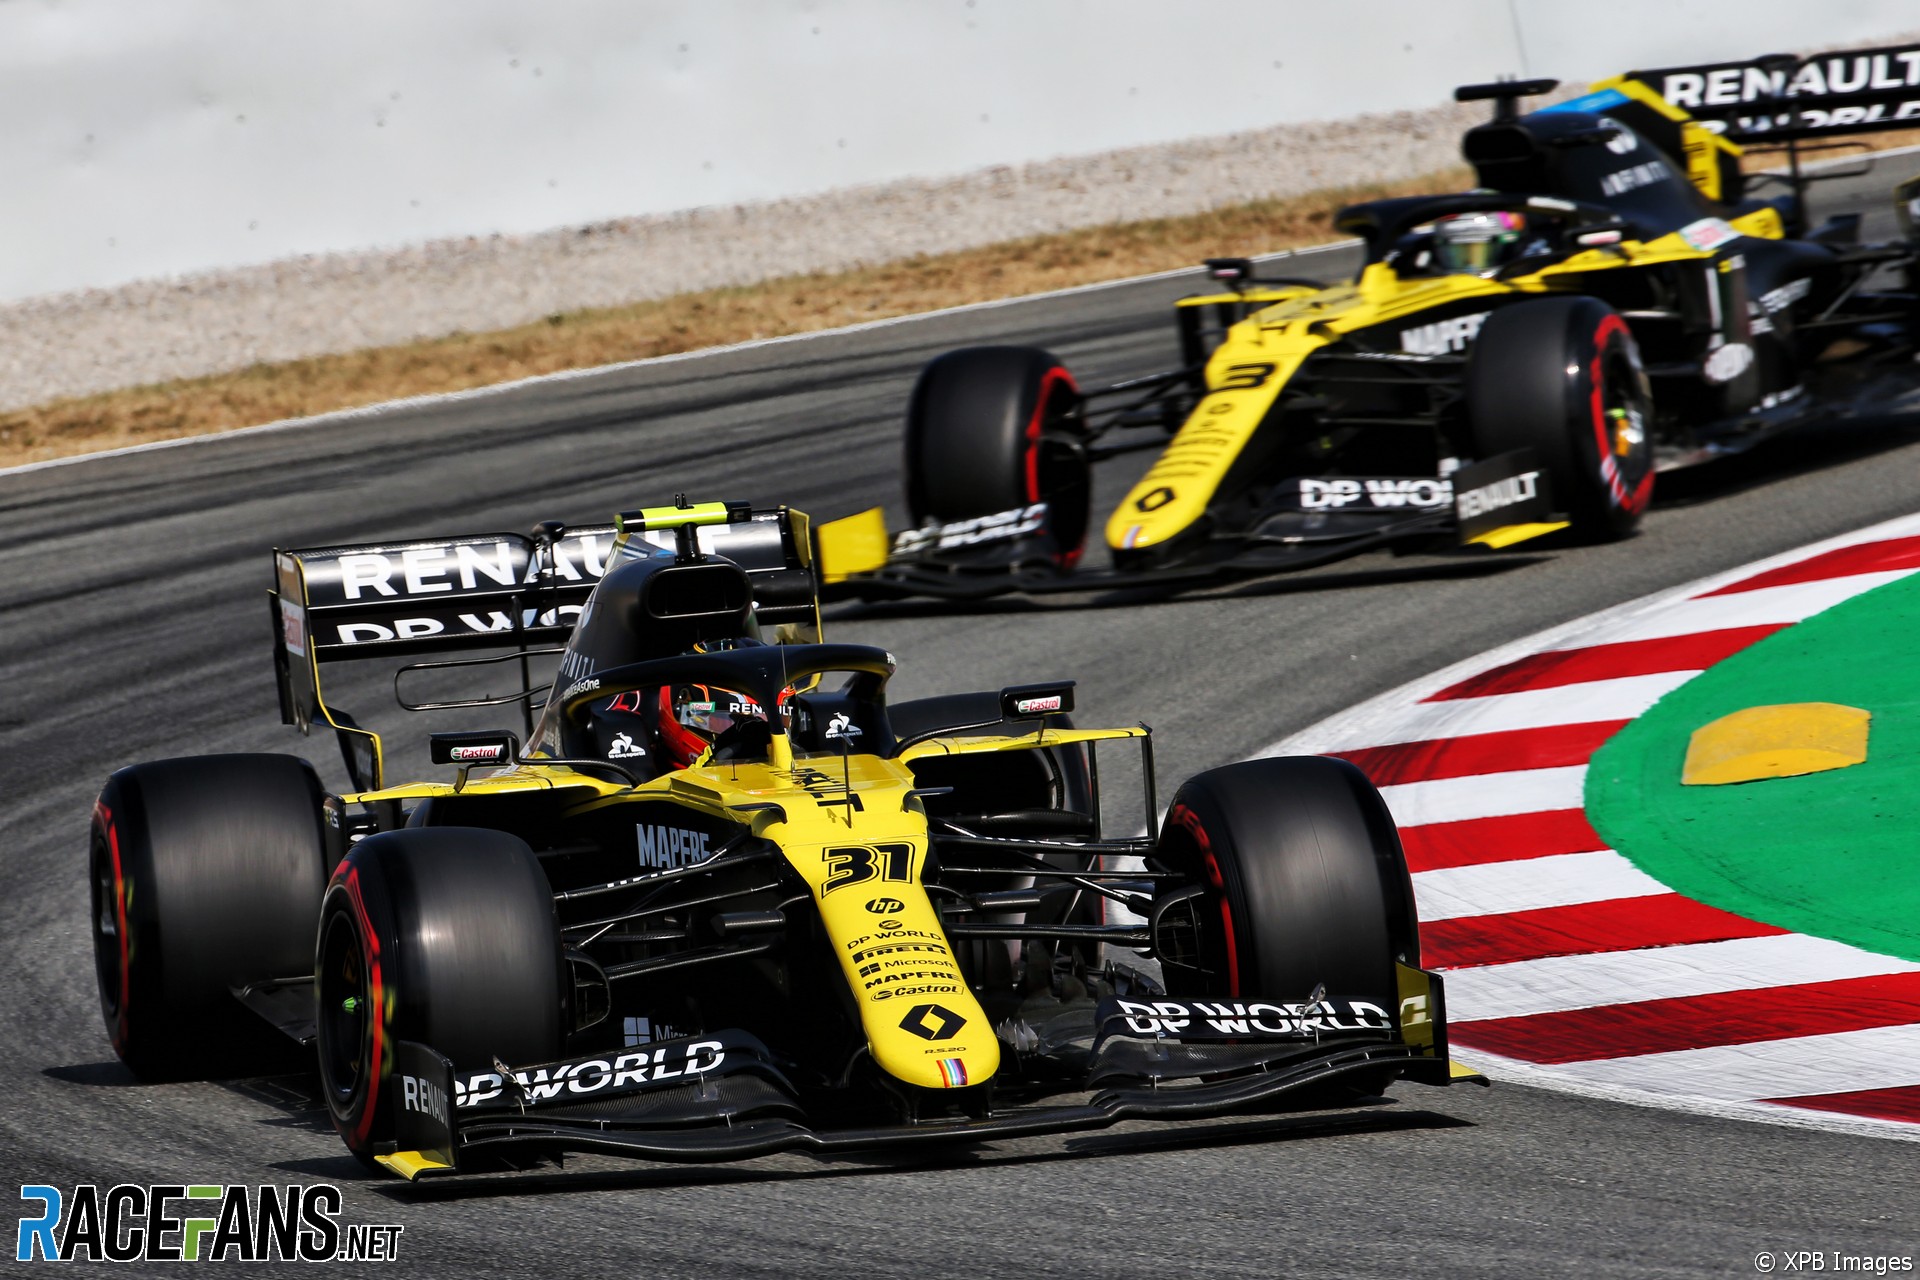 Esteban Ocon, Renault, Circuit de Catalunya, 2020